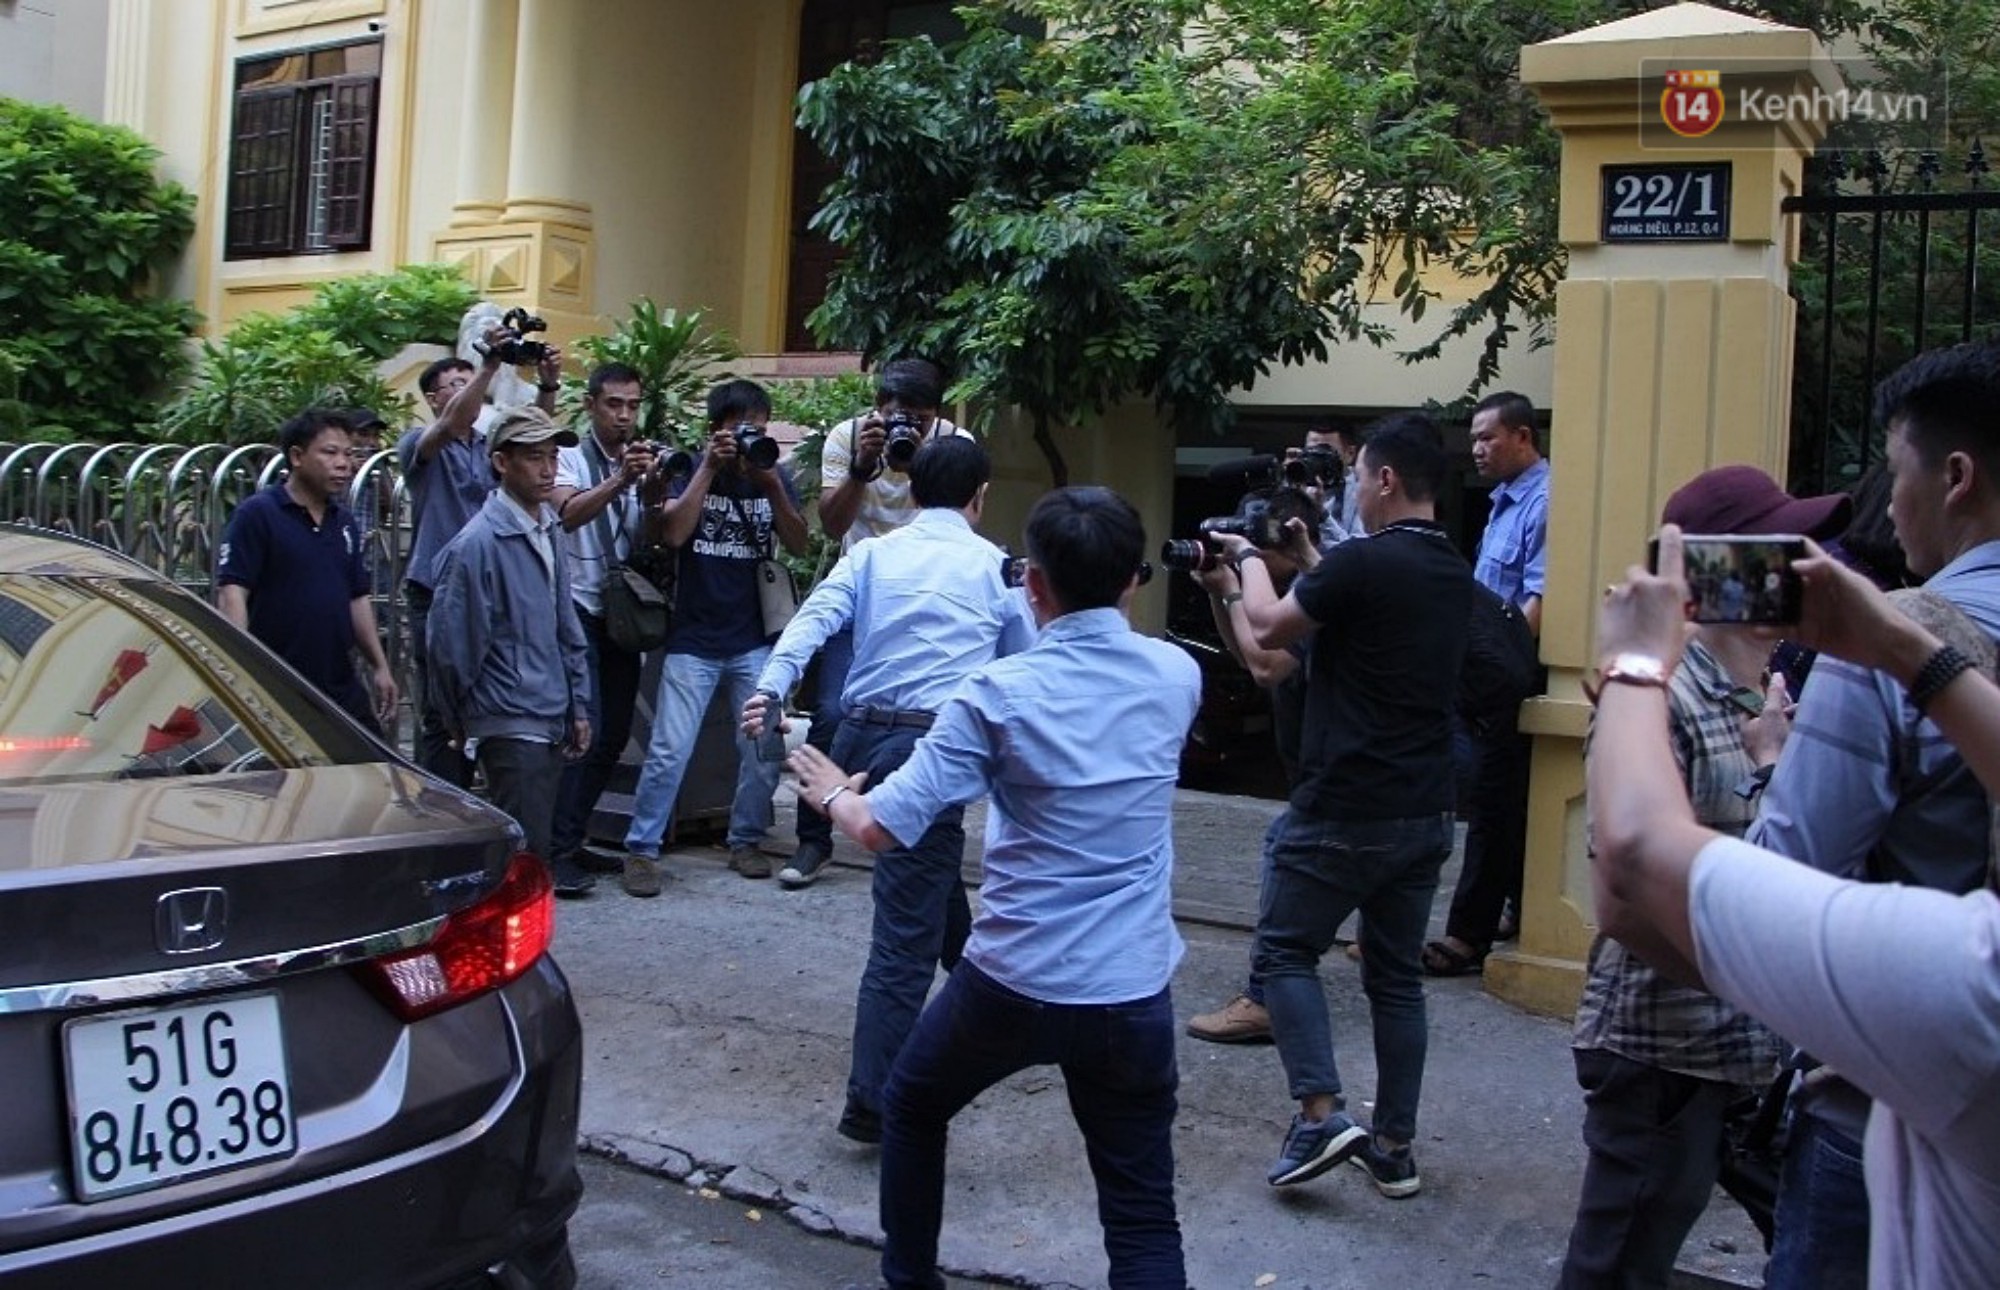 Ông Nguyễn Hữu Linh vội vàng chạy vào nhà vệ sinh để né tránh phóng viên trong ngày hầu tòa - Ảnh 1.